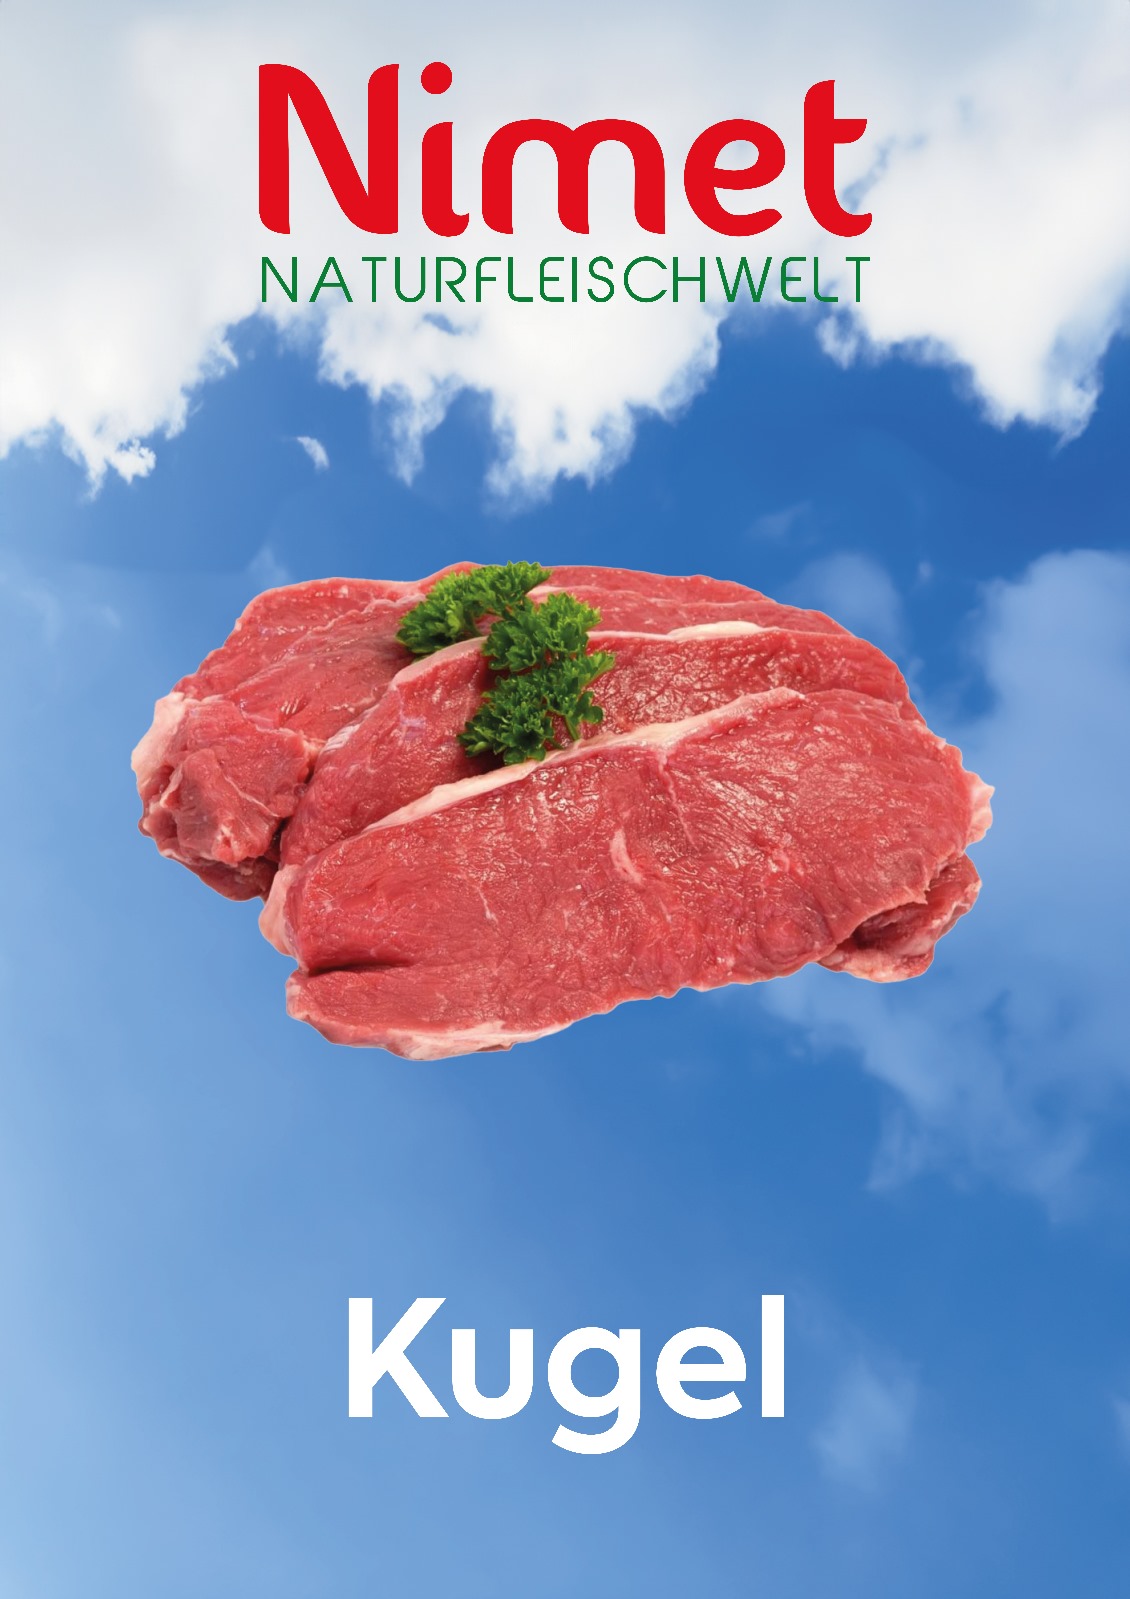 KAMPANYA ÜRÜNÜ Biftek (Paketleme + - 500 gr) 1 Kg fiyatı  